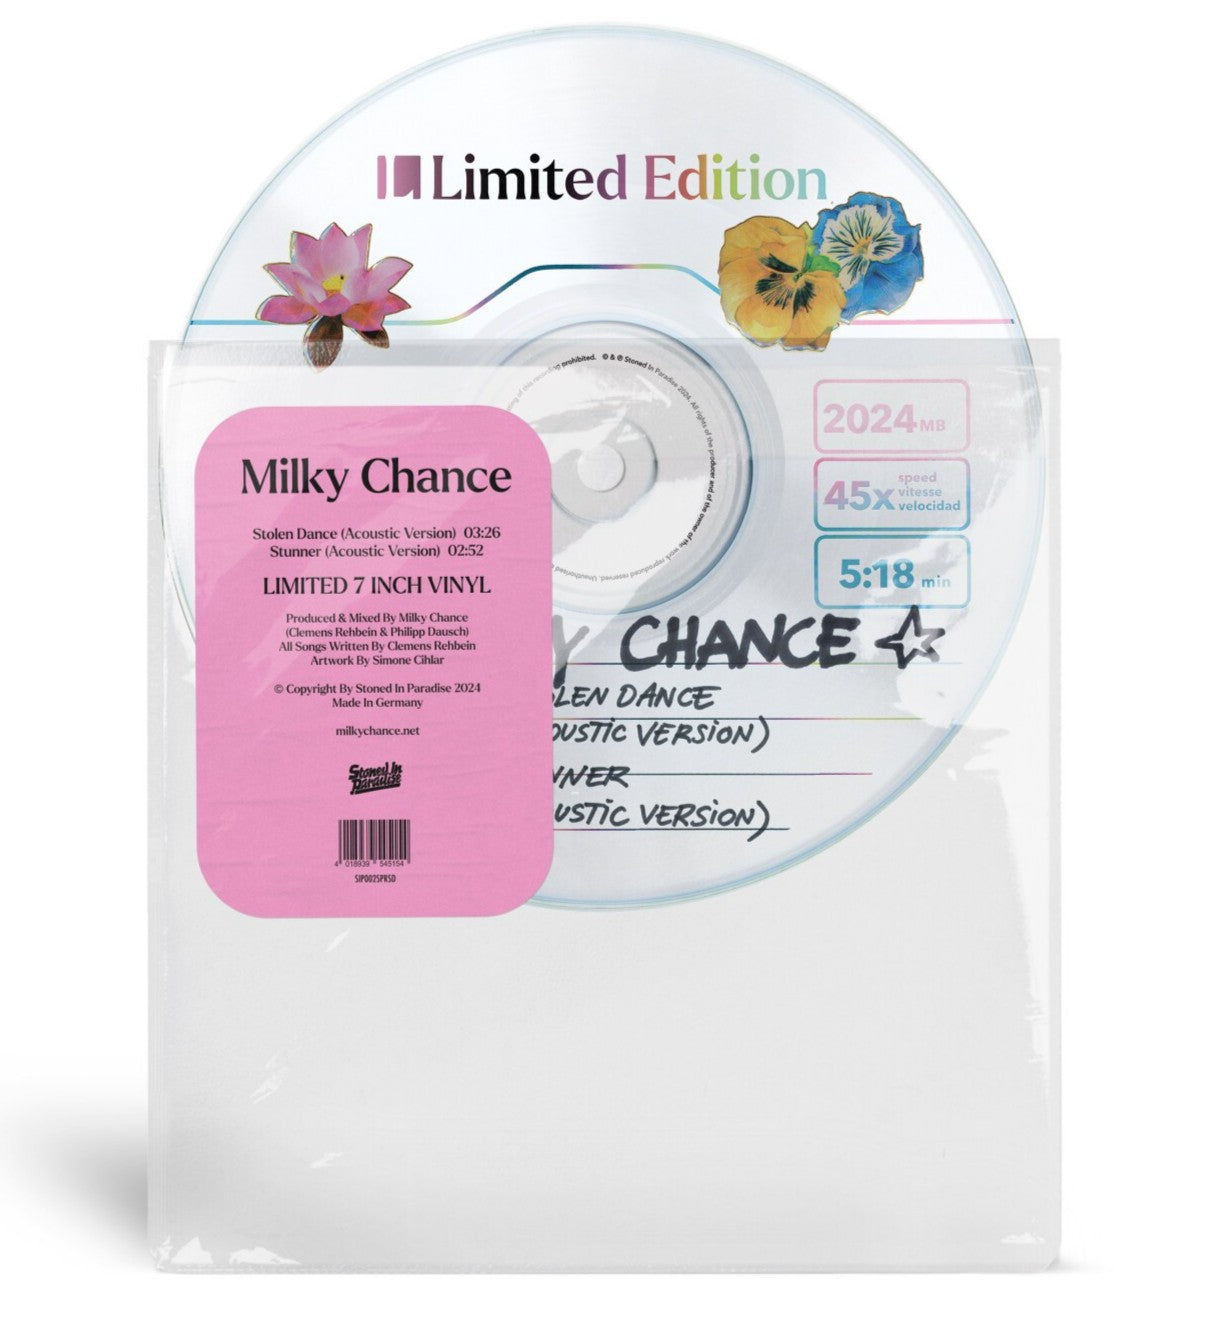 Milky Chance - Stolen Dance: Limited Picture Disc Vinyl 7" Single